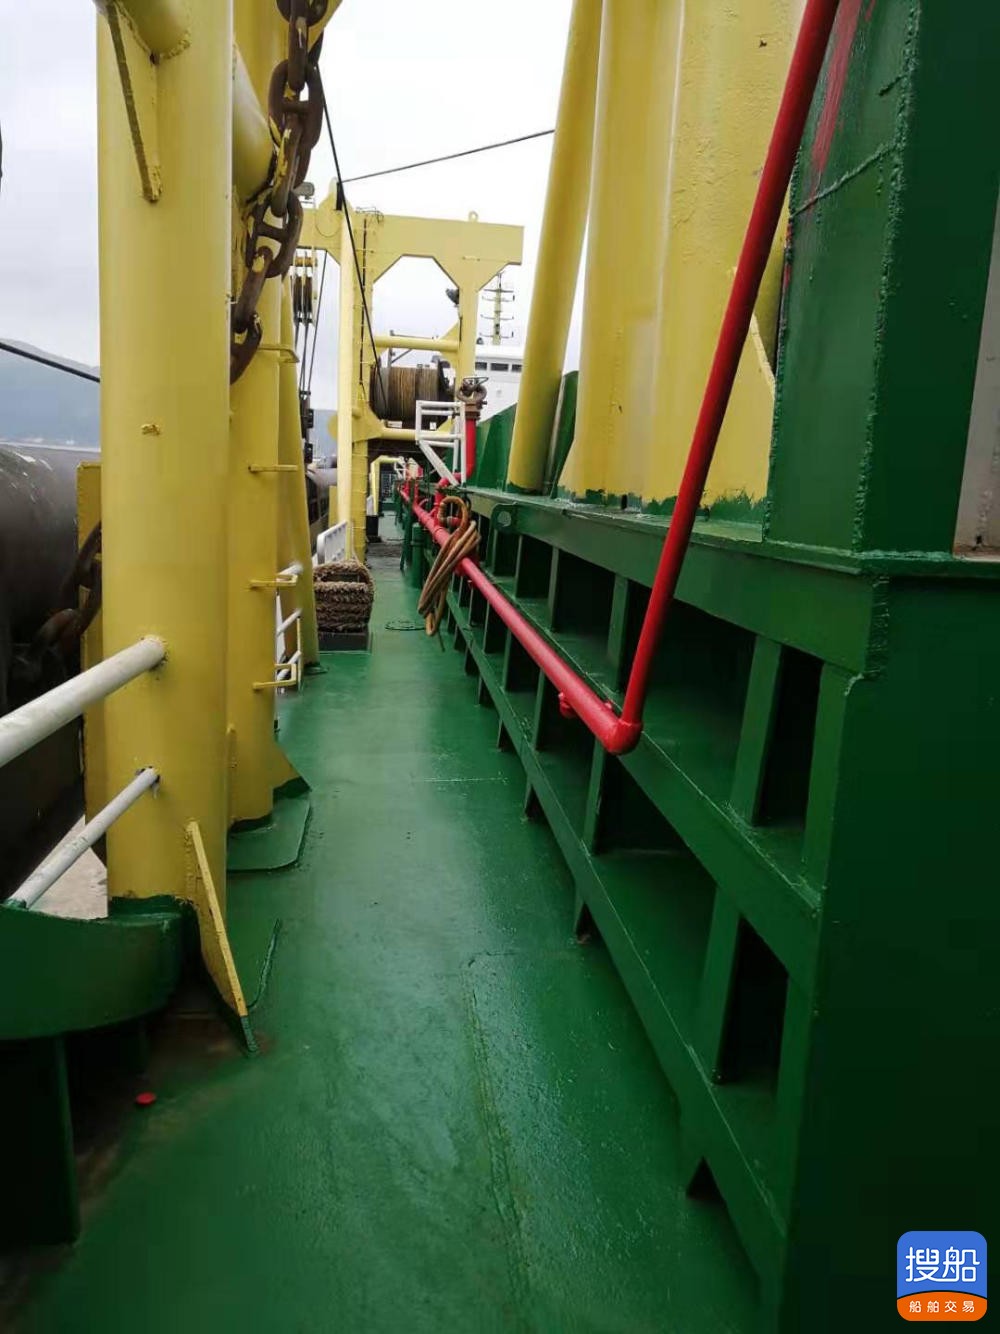 出售2014年造无证9500吨自吸自卸砂船